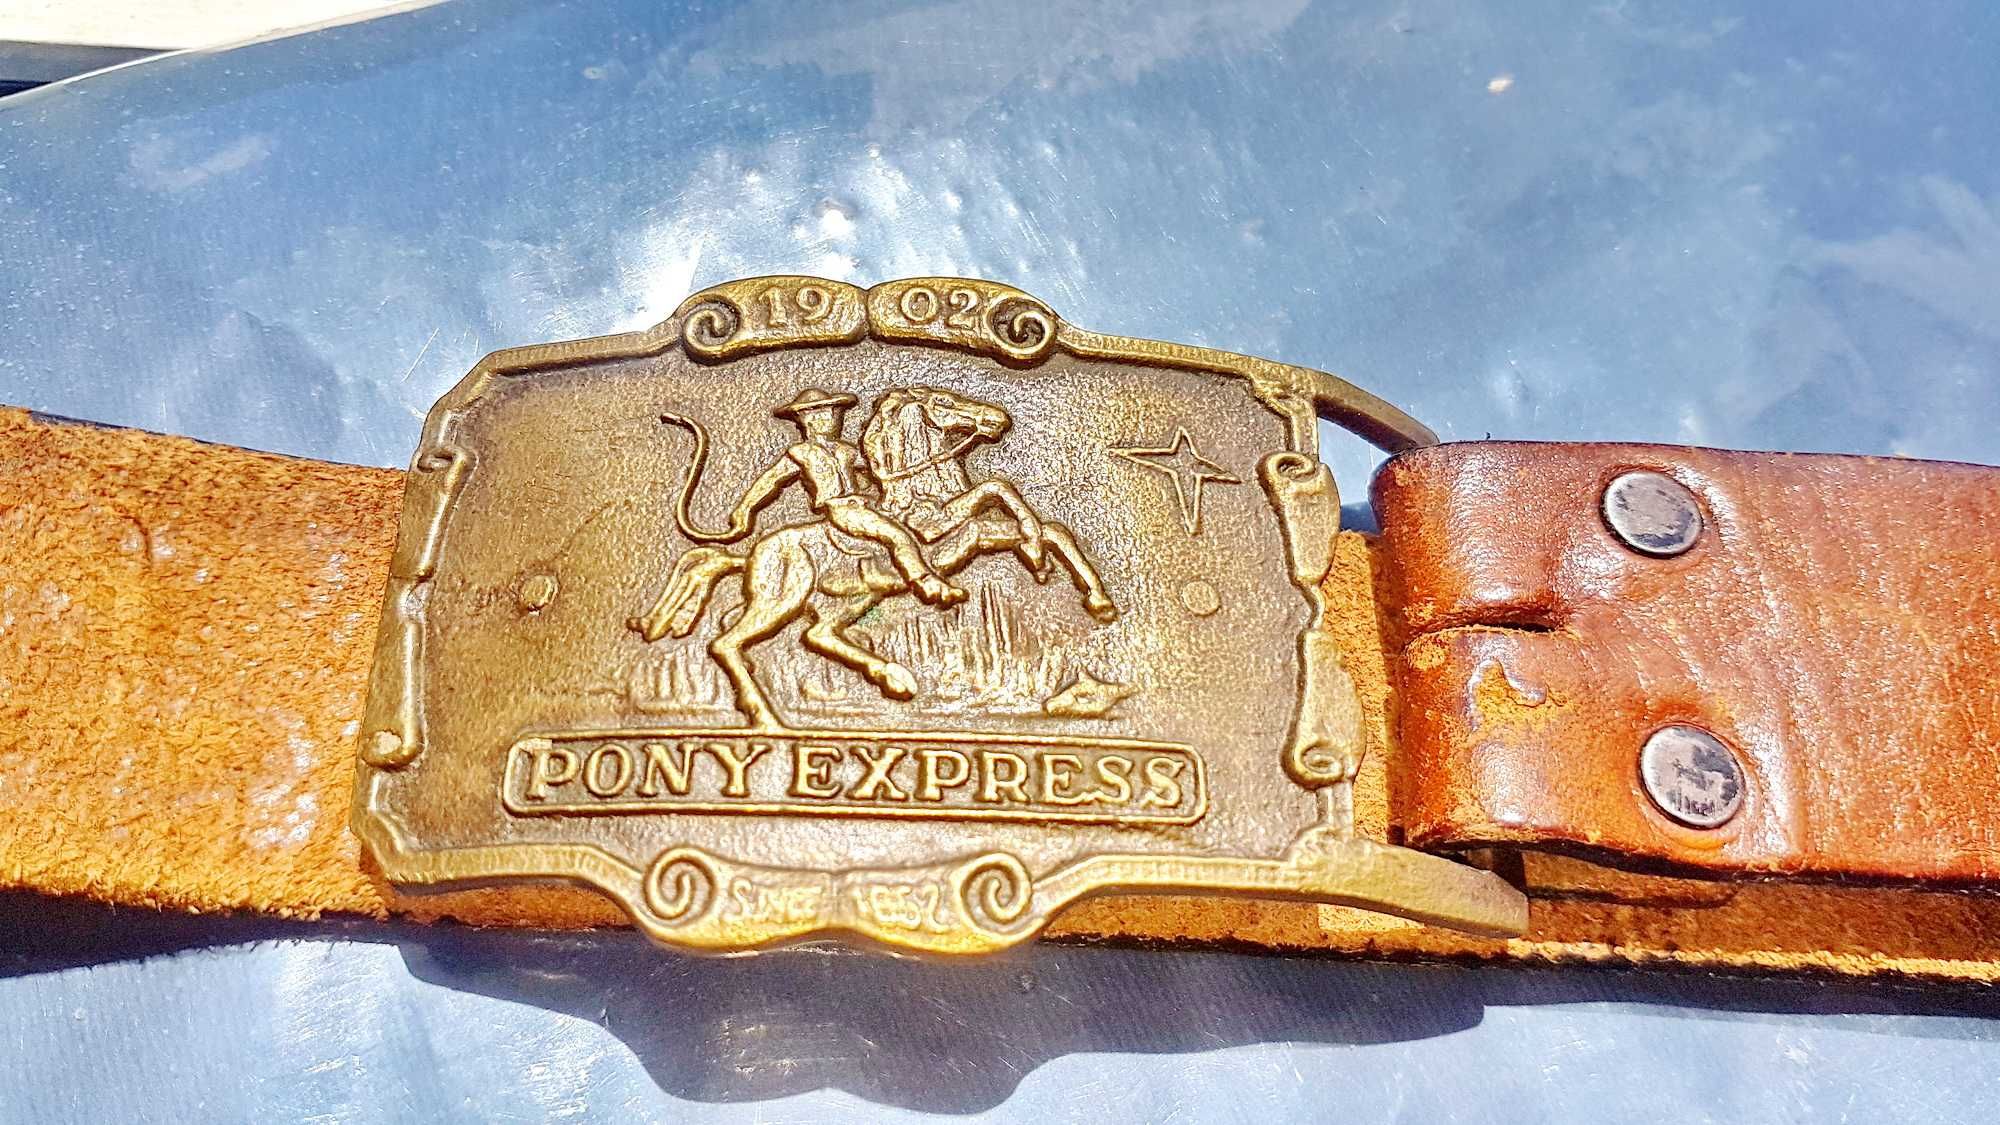 D993-Curea Veche Piele Cu Pafta Pony Express 1852-1902 Bronz.